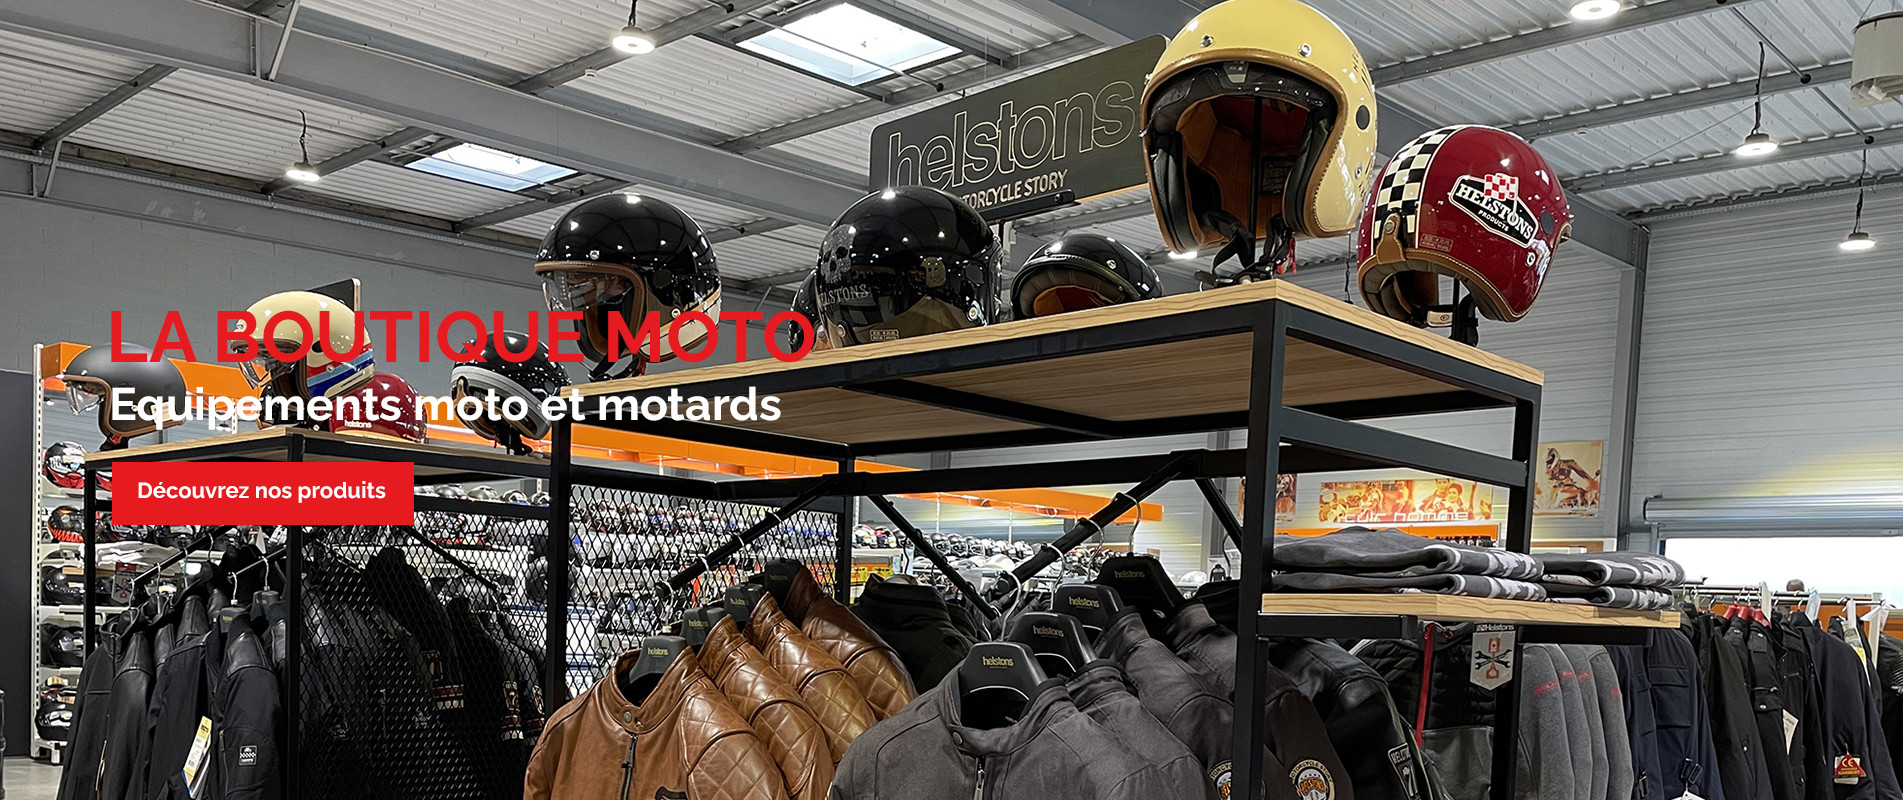 La Boutique Moto Equipements moto et motards